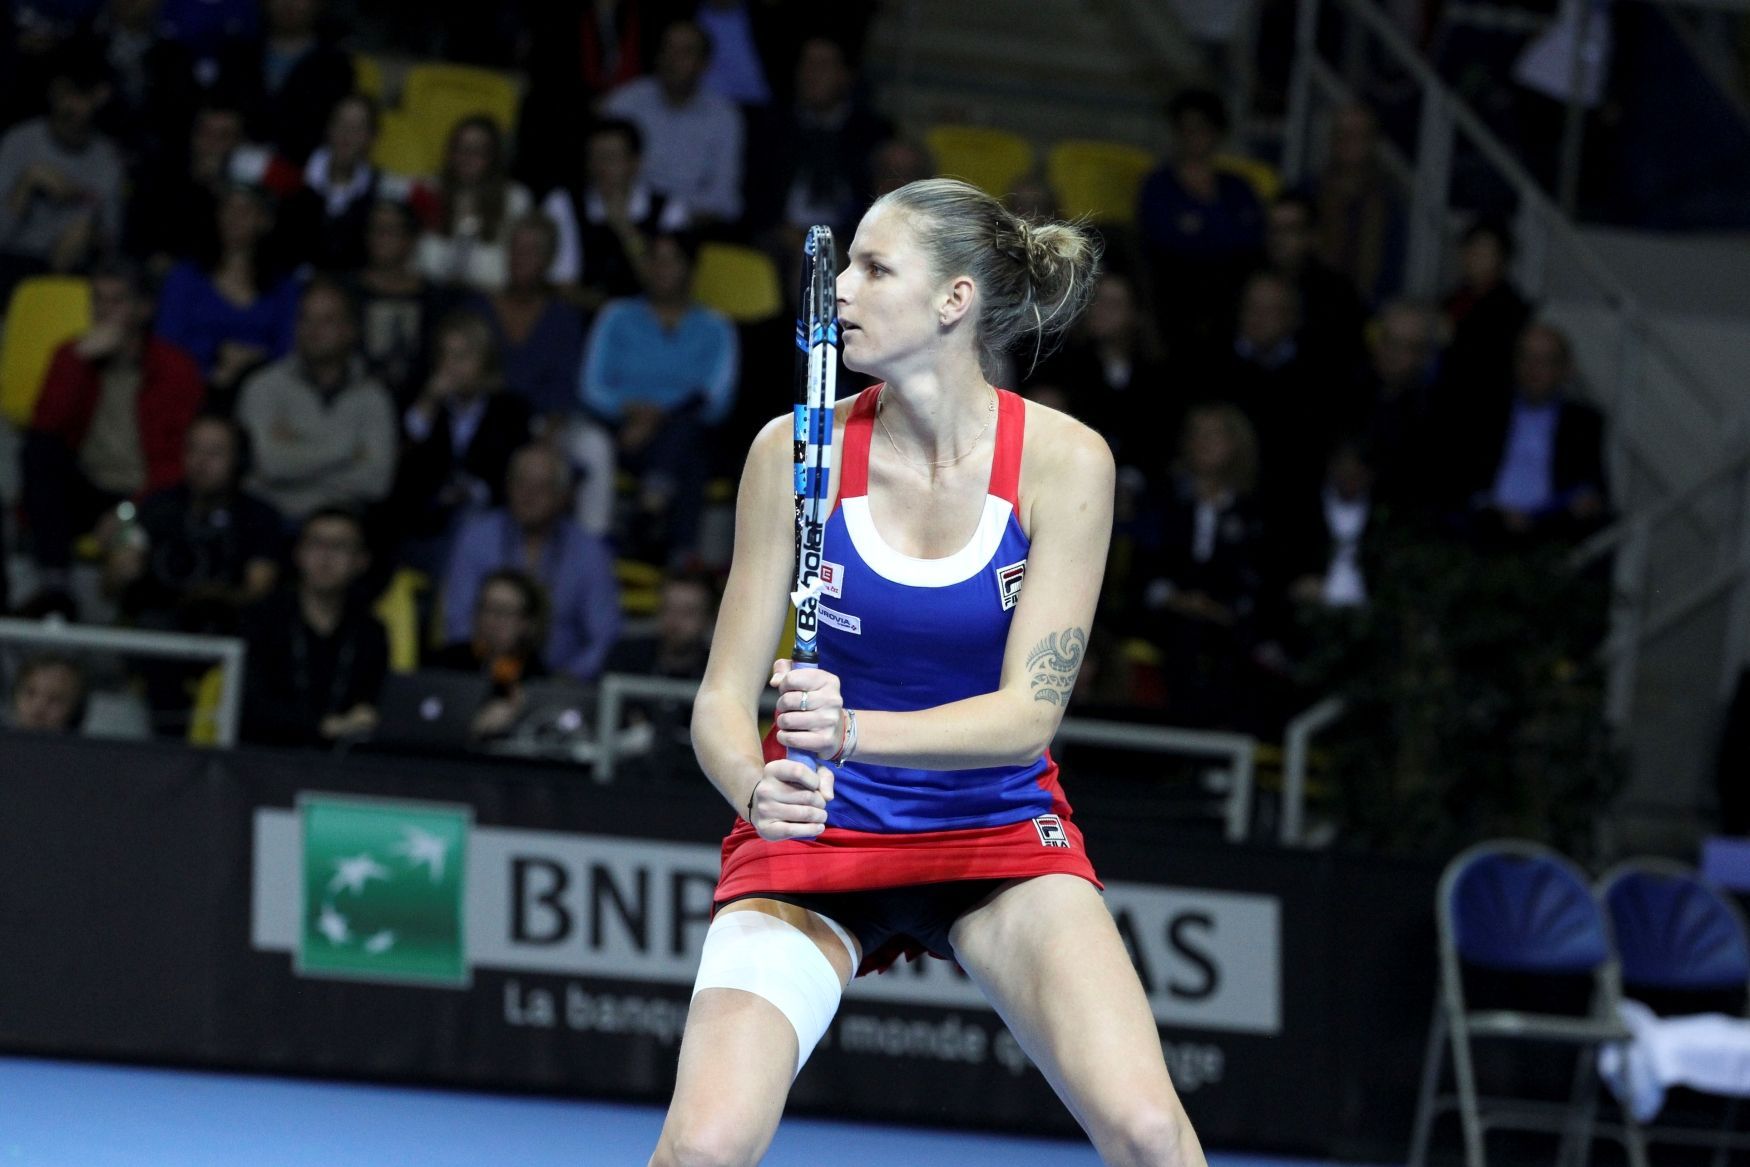 Finále Fed Cupu 2016 Francie-ČR: Karolína Plíšková